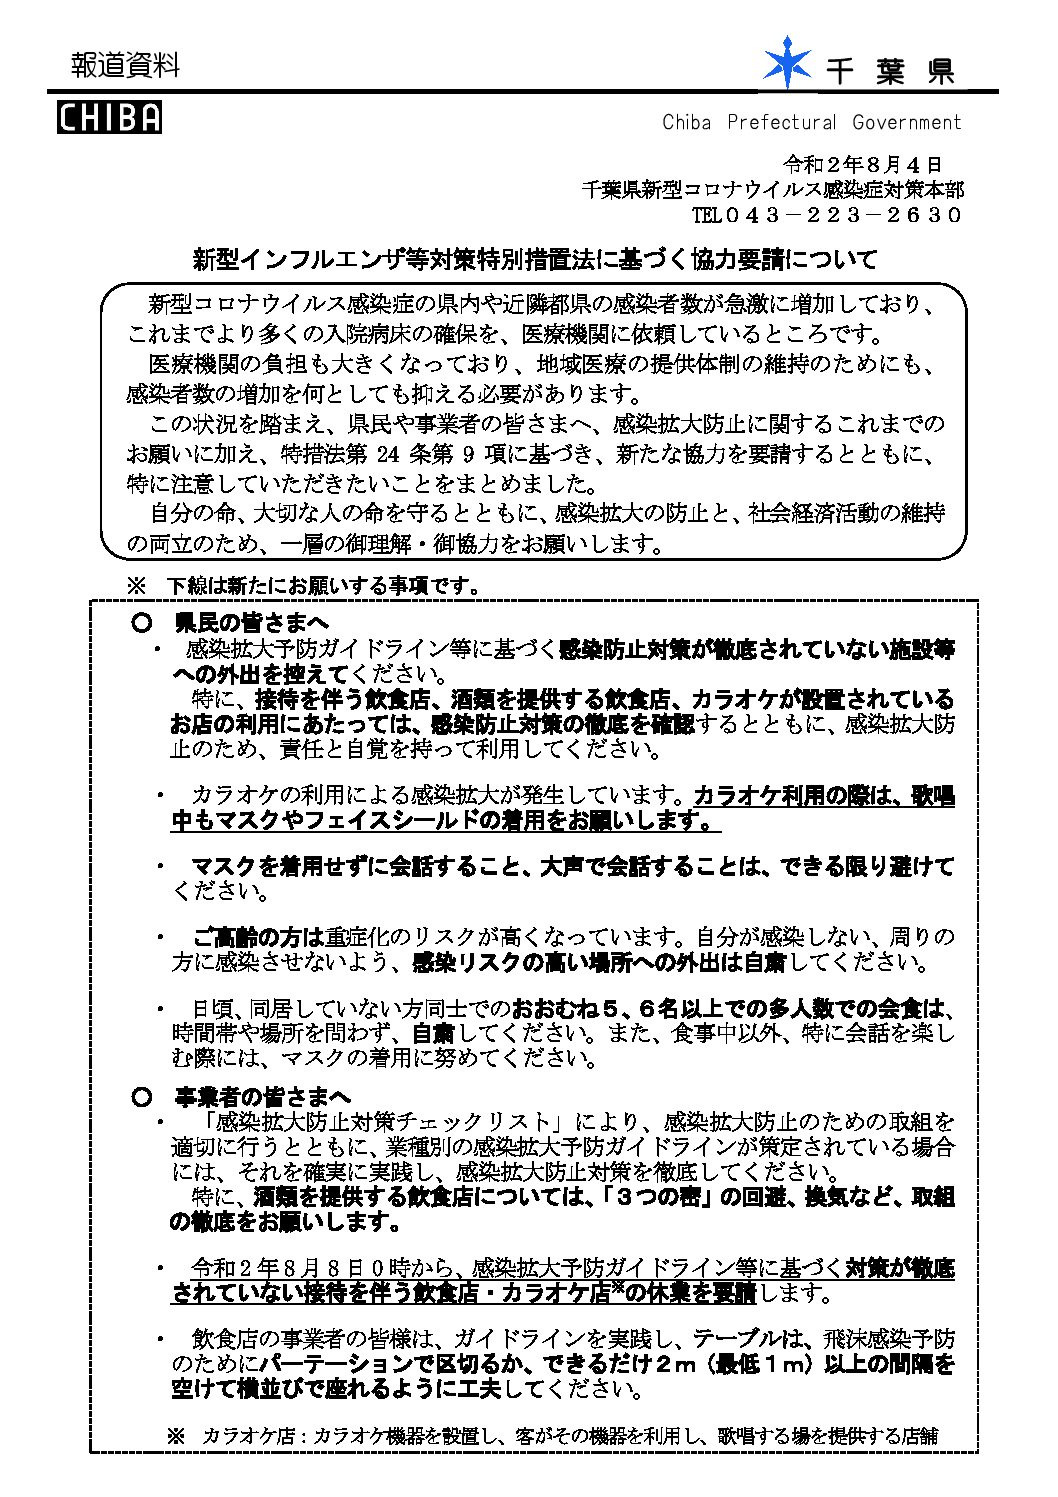 千葉県(8月4日発表)新型インフルエンザ等対策特別措置法に基づく協力要請について